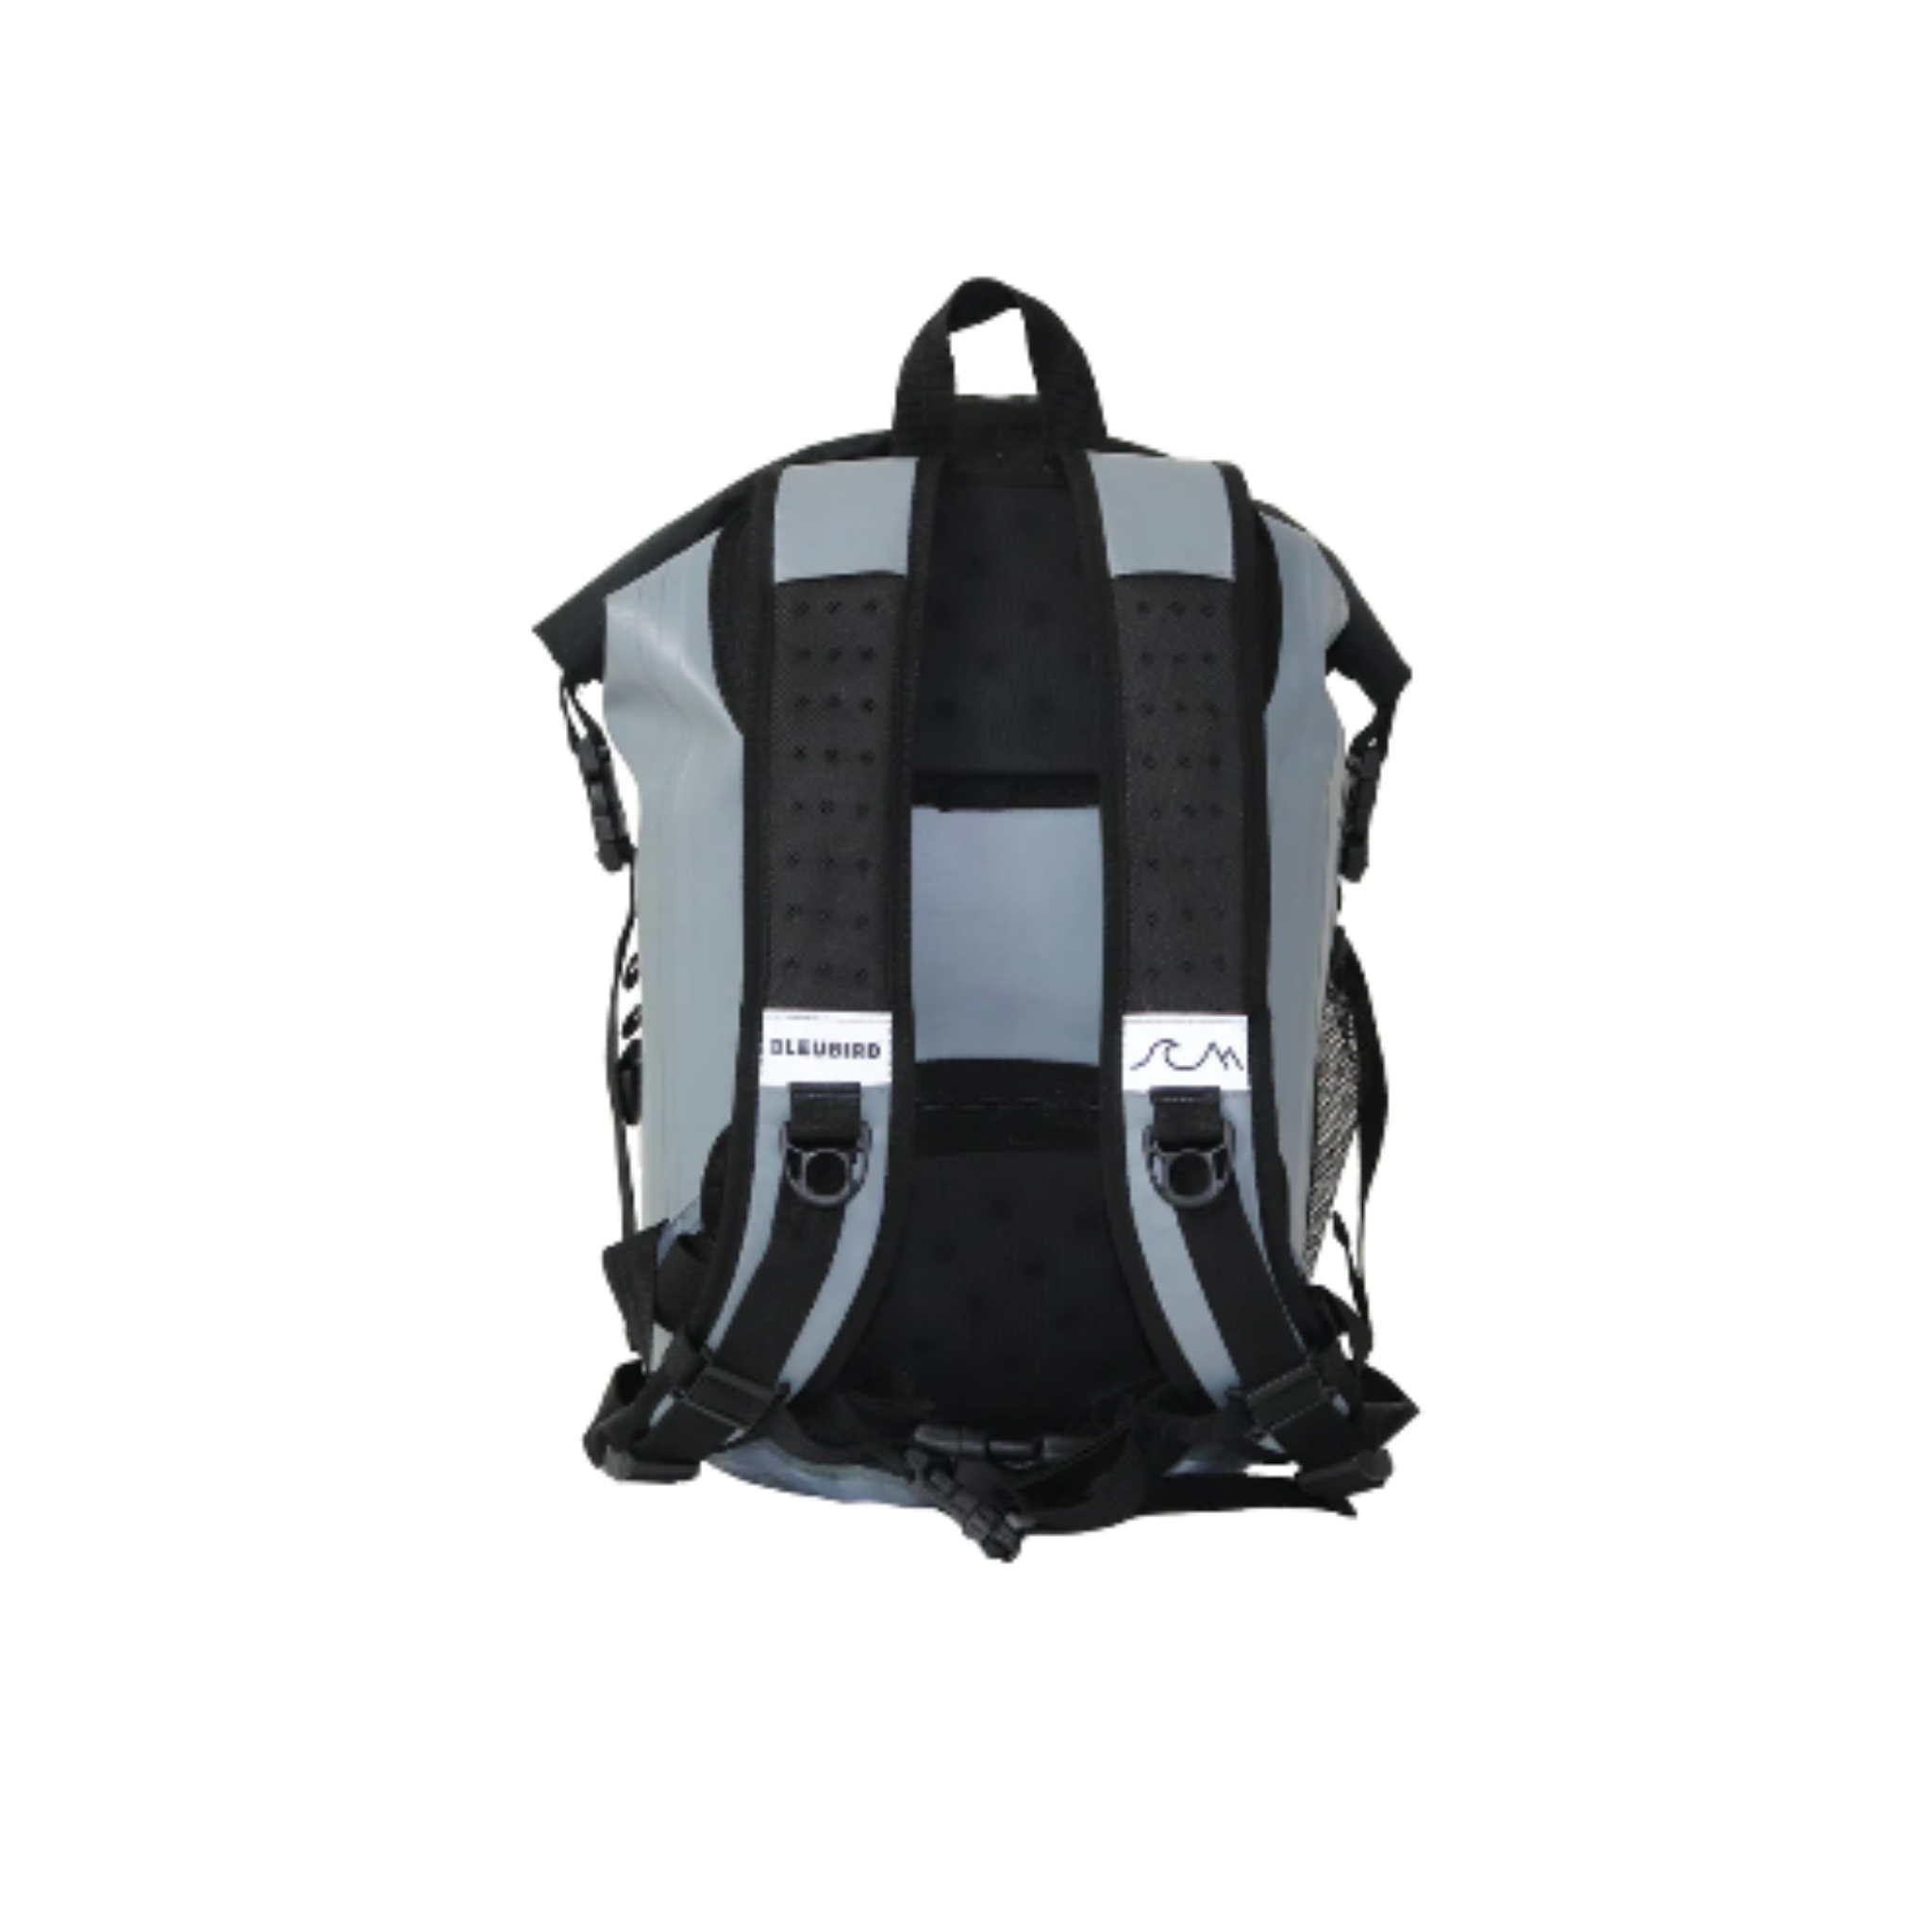 Bleubird Waterproof Backpack 40L | Bleubird | Portwest - The Outdoor Shop